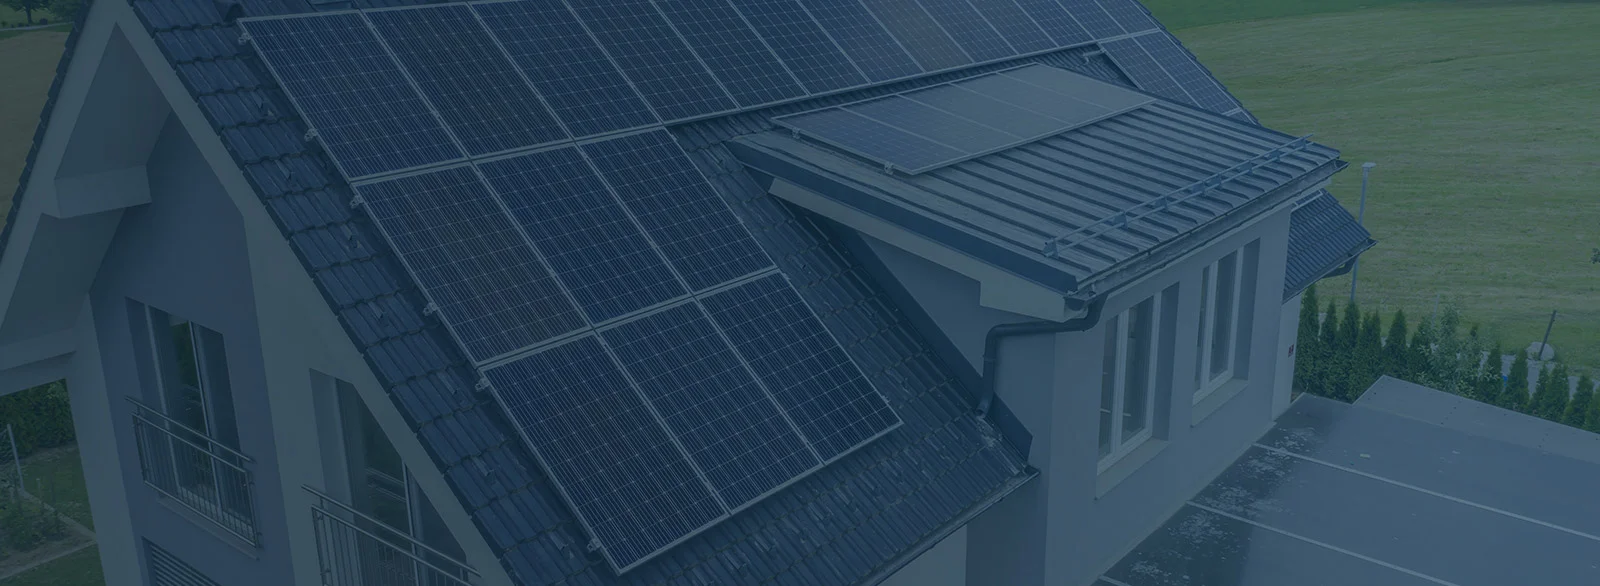 Rooftop solar mounts | Rooftop Solutions | RoofTop Solar | solar mounting | Solar panel mounts